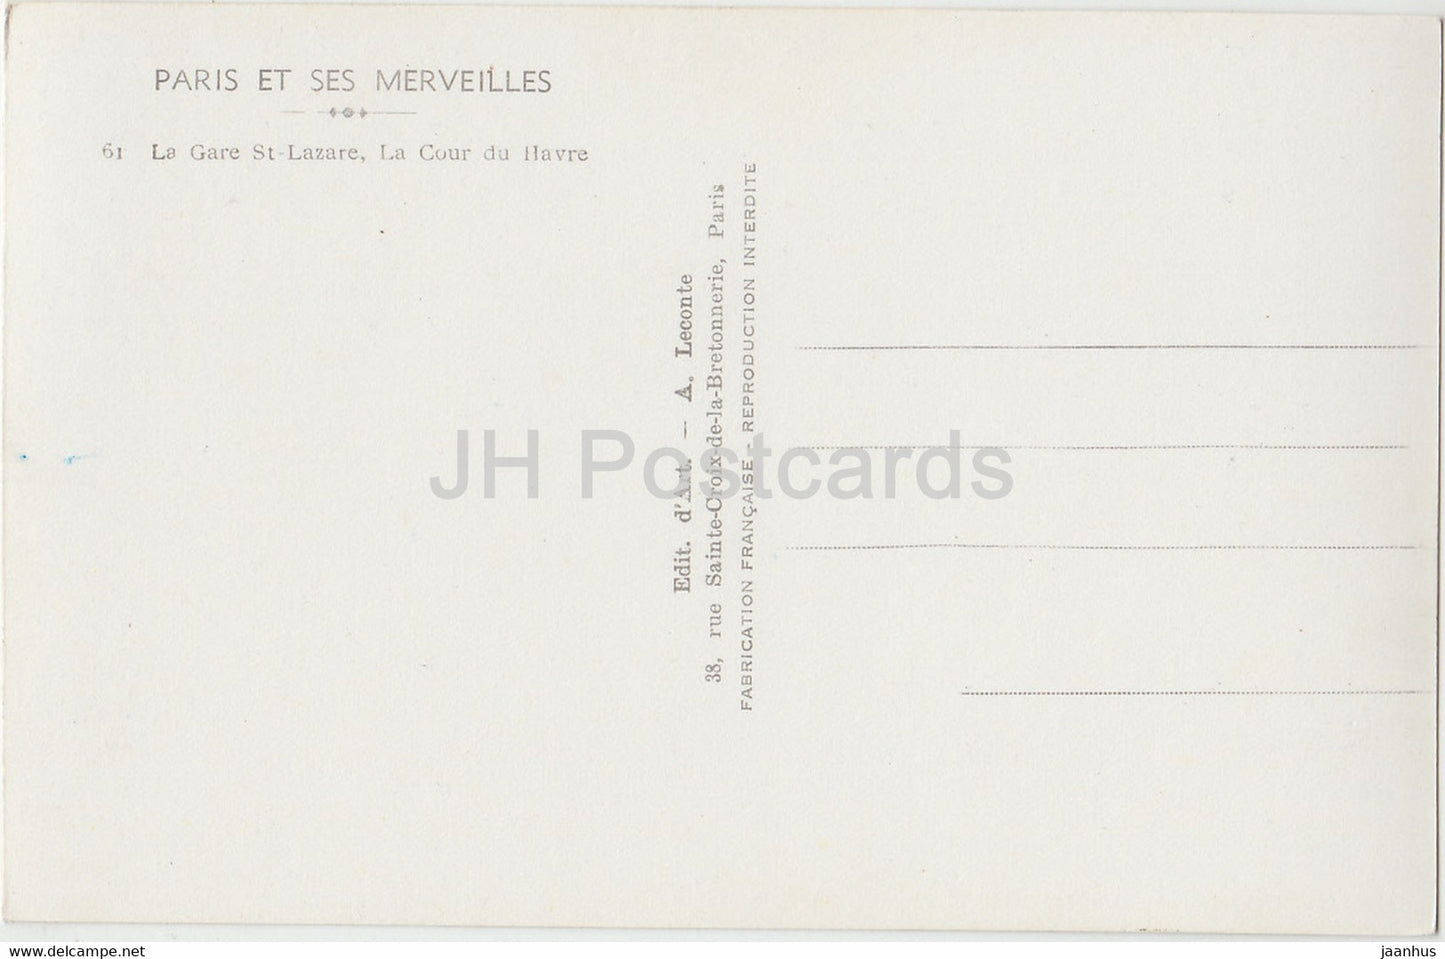 Paris Et Ses Merveilles - La Gare St Lazare - La Cour du Havre - old car - 61 - old postcard - France - unused